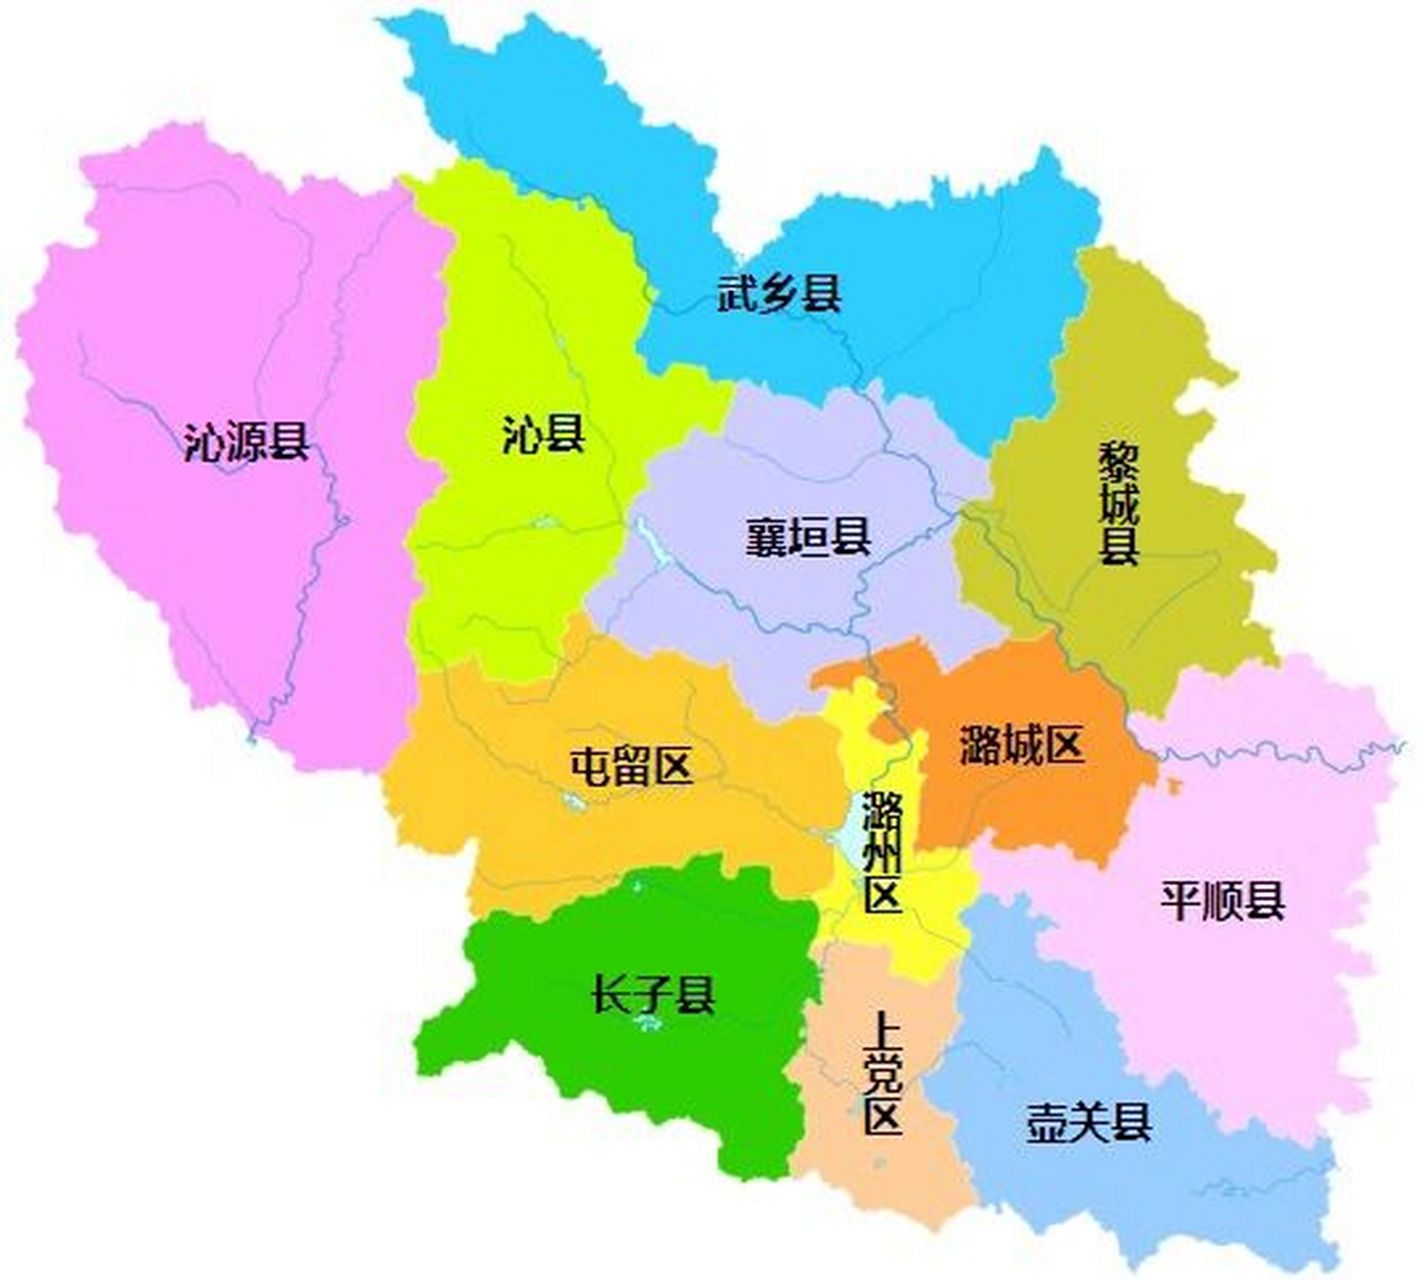 长治全市划分为 4个区:潞州区,上党区,屯留区,潞城区; 8个县:襄垣